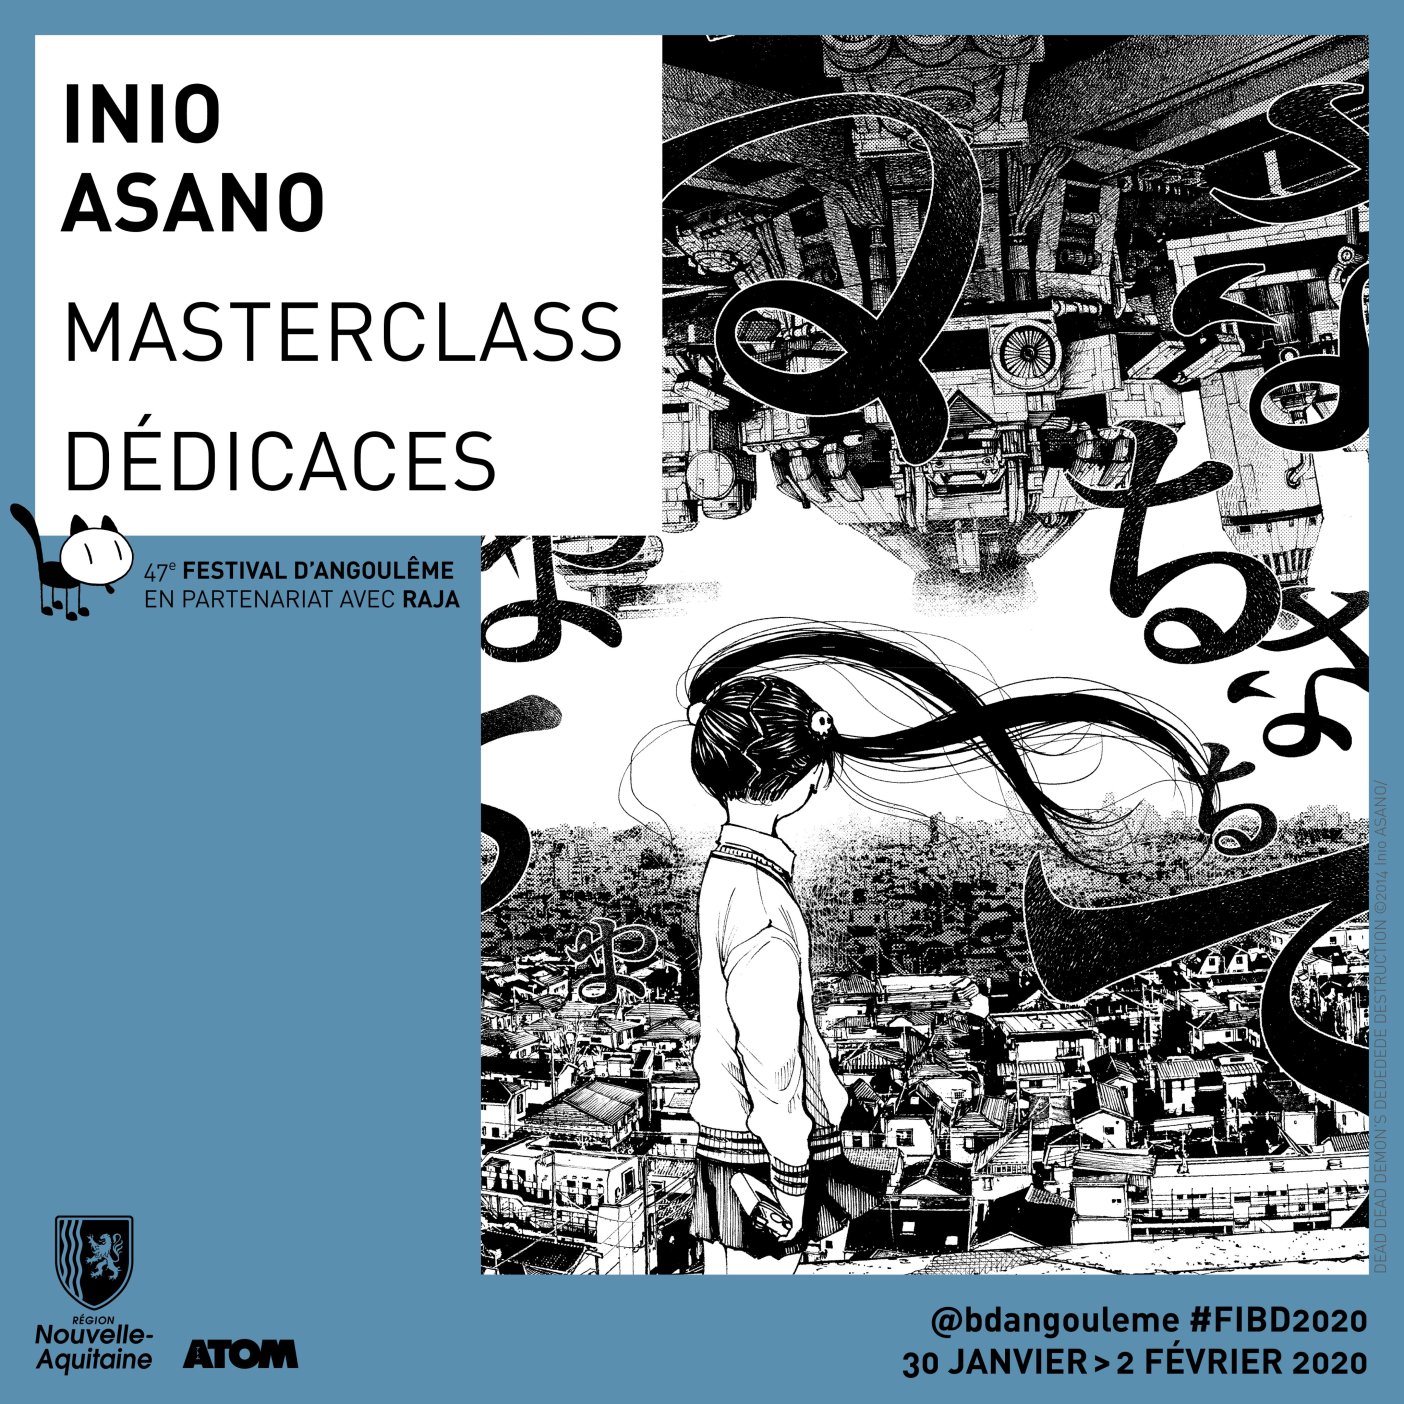 Inio Asano Masterclass